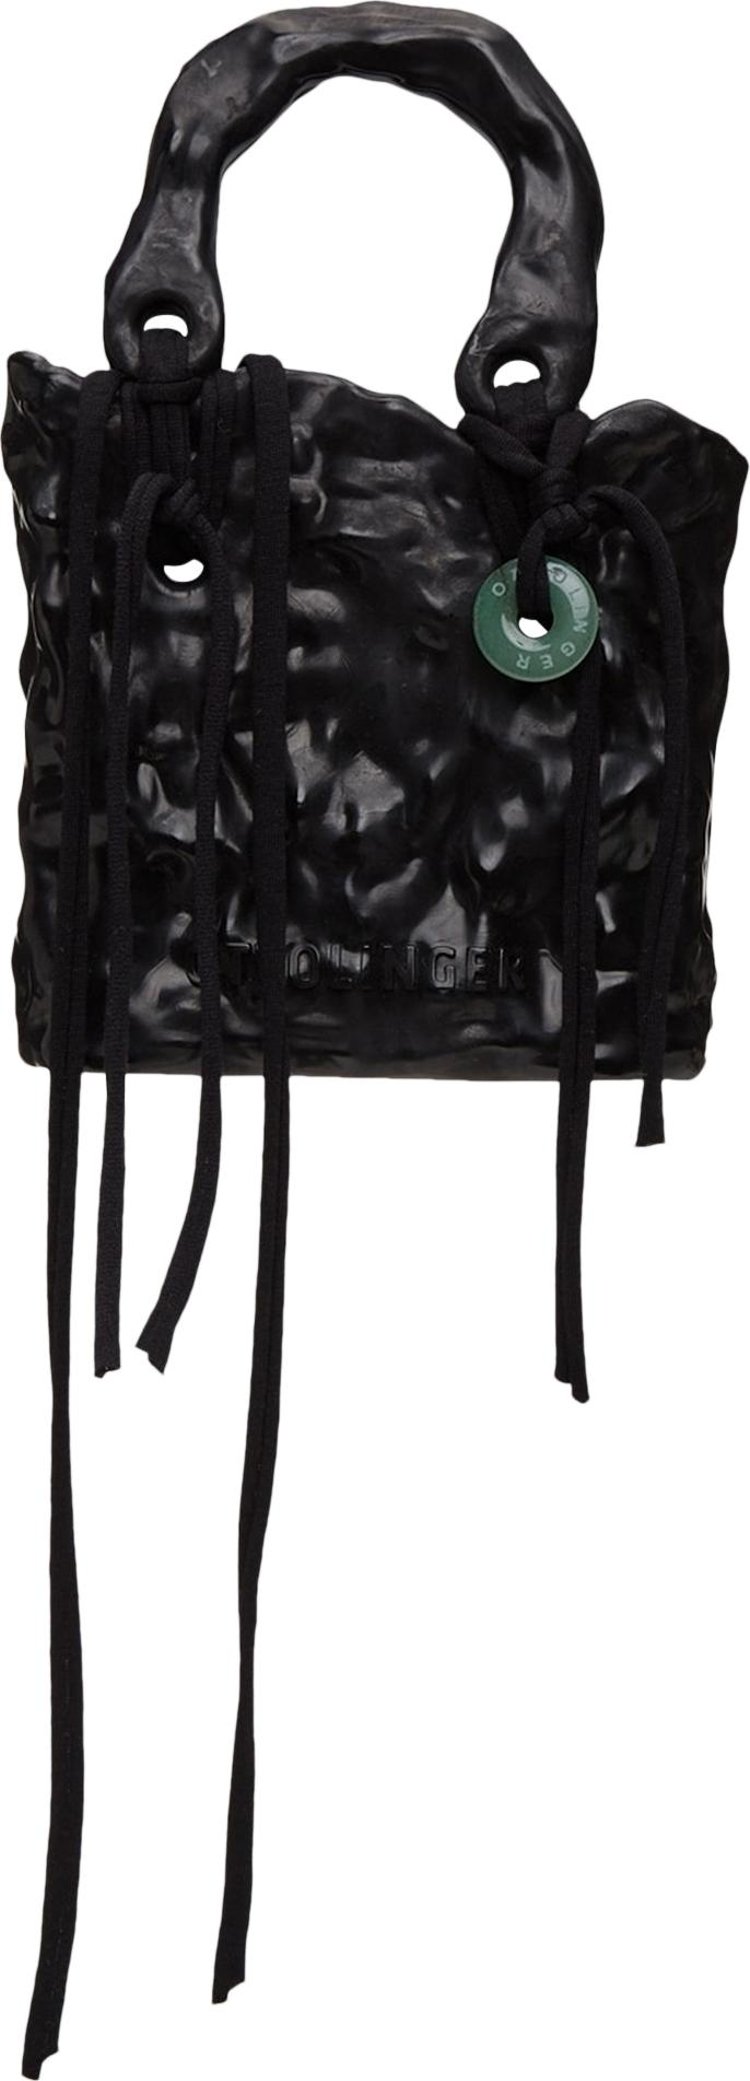 OTTOLINGER Signature Ceramic Handbag in Black